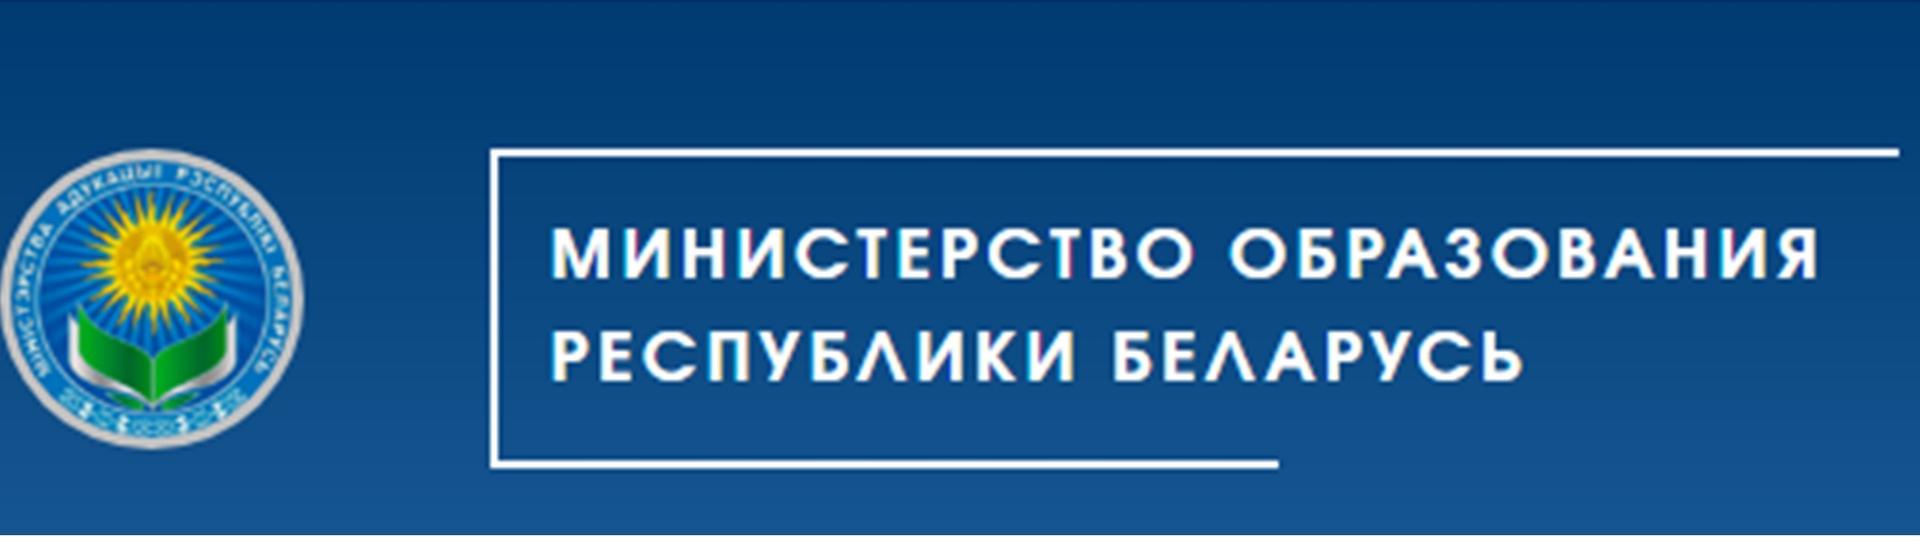 Министерство образования Республики Беларусь http://edu.gov.by/